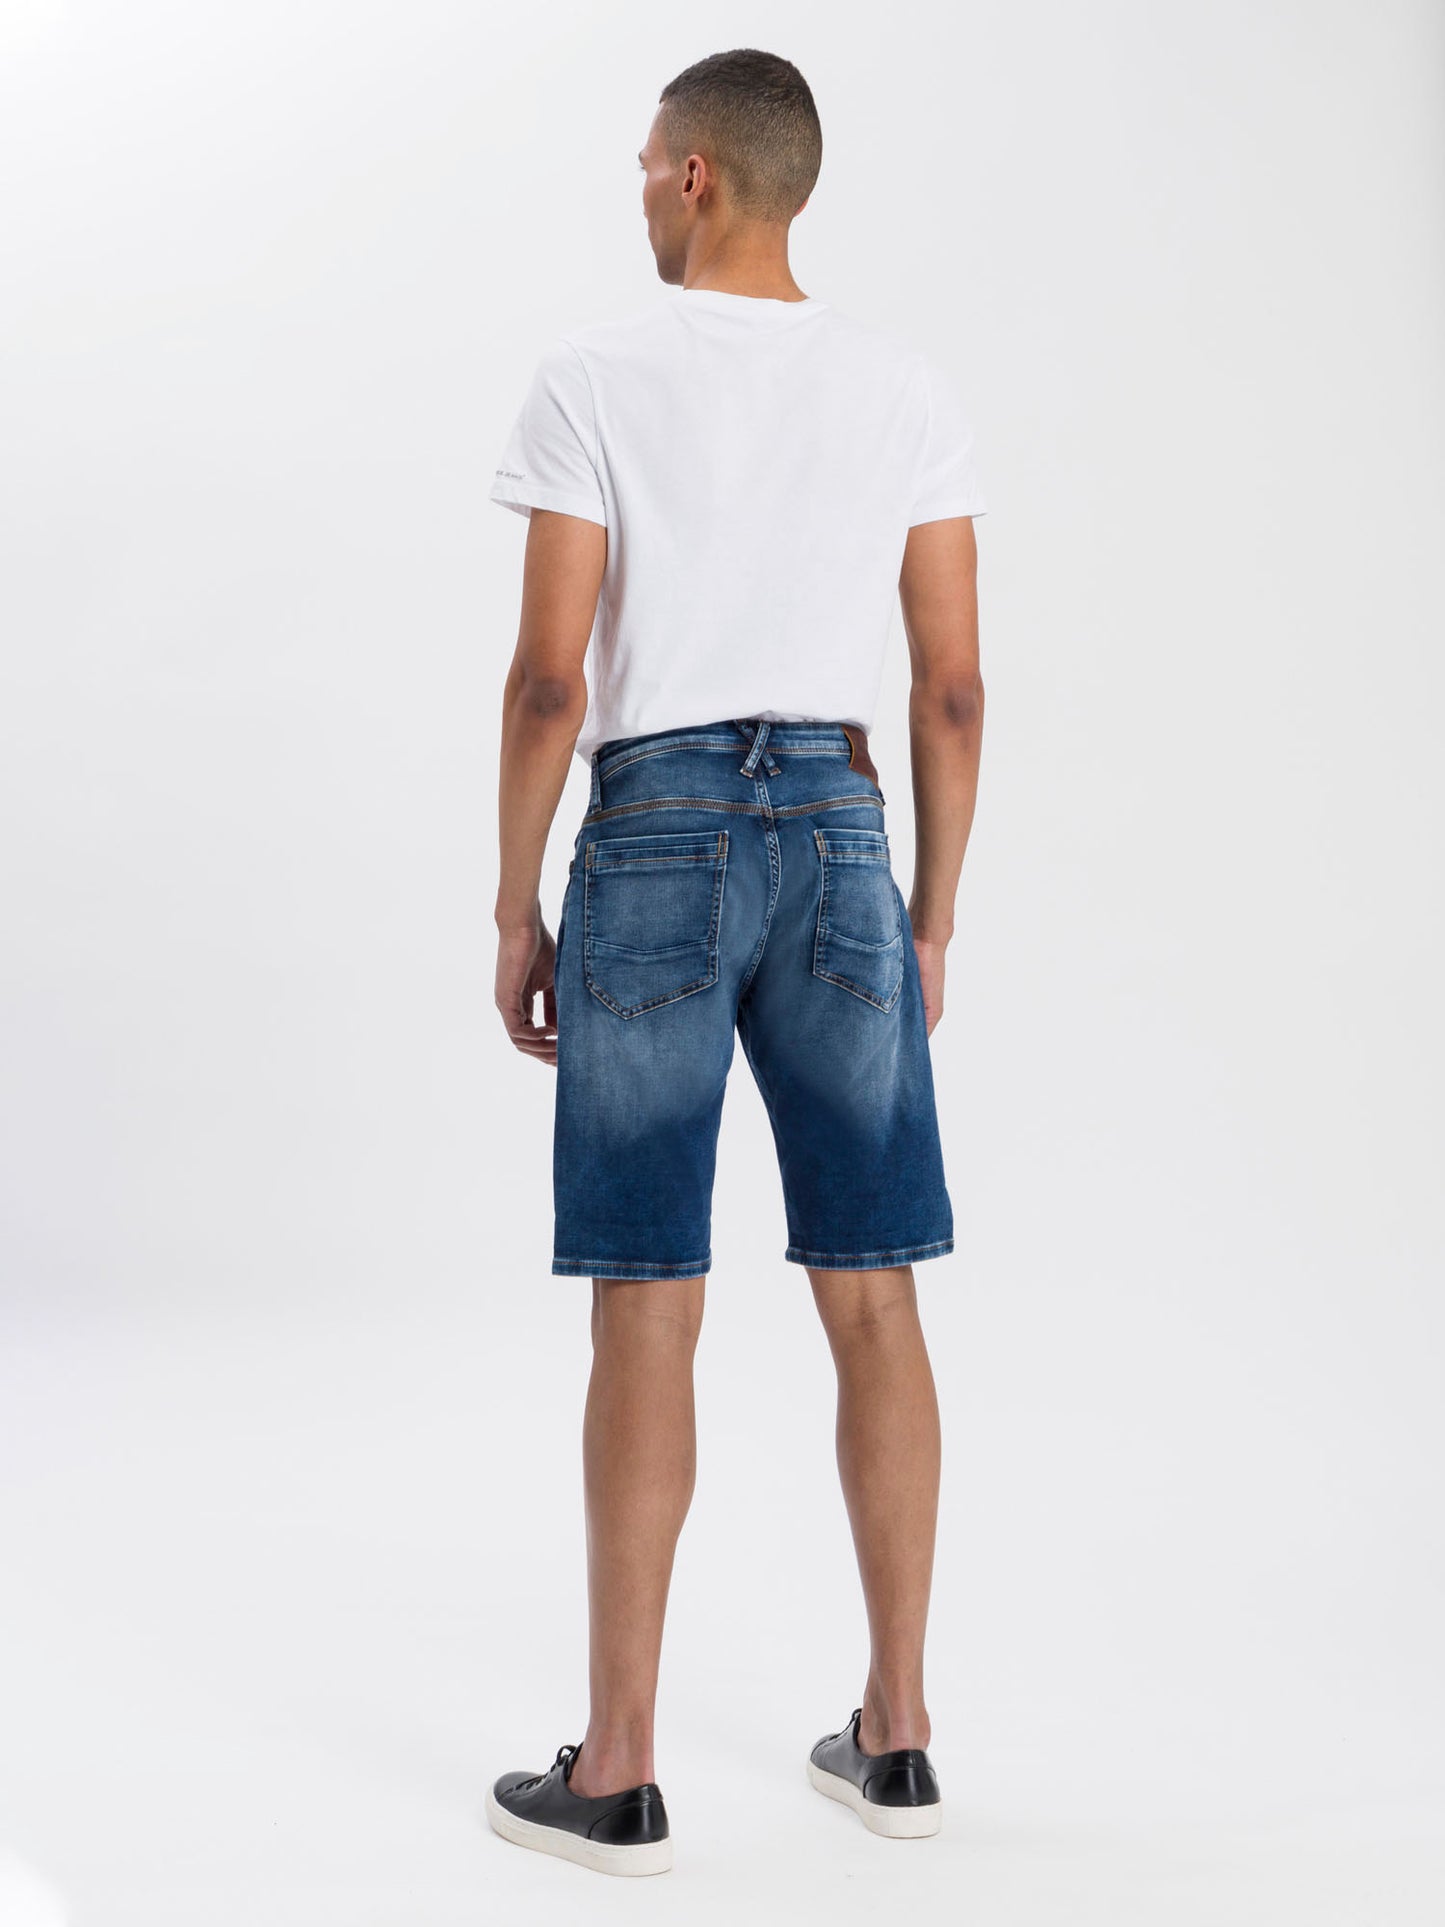 Leom Herren Jeans Shorts Regular dunkelblau